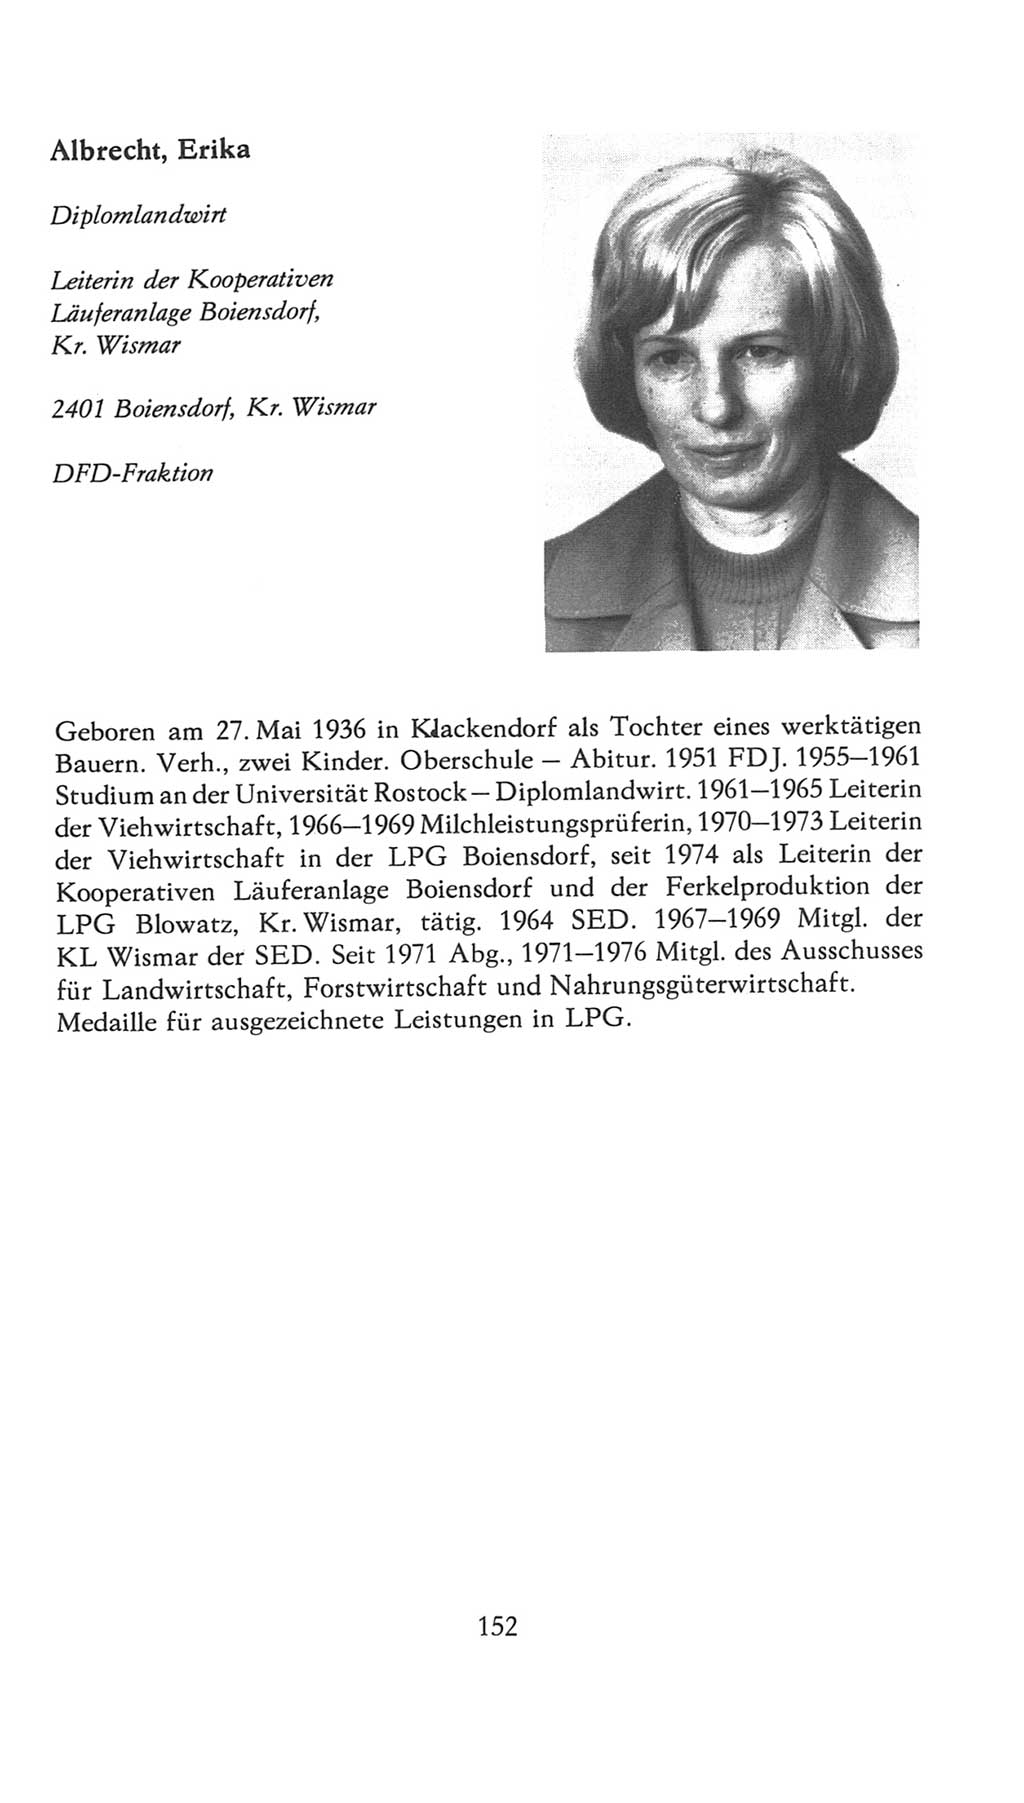 Volkskammer (VK) der Deutschen Demokratischen Republik (DDR), 7. Wahlperiode 1976-1981, Seite 152 (VK. DDR 7. WP. 1976-1981, S. 152)